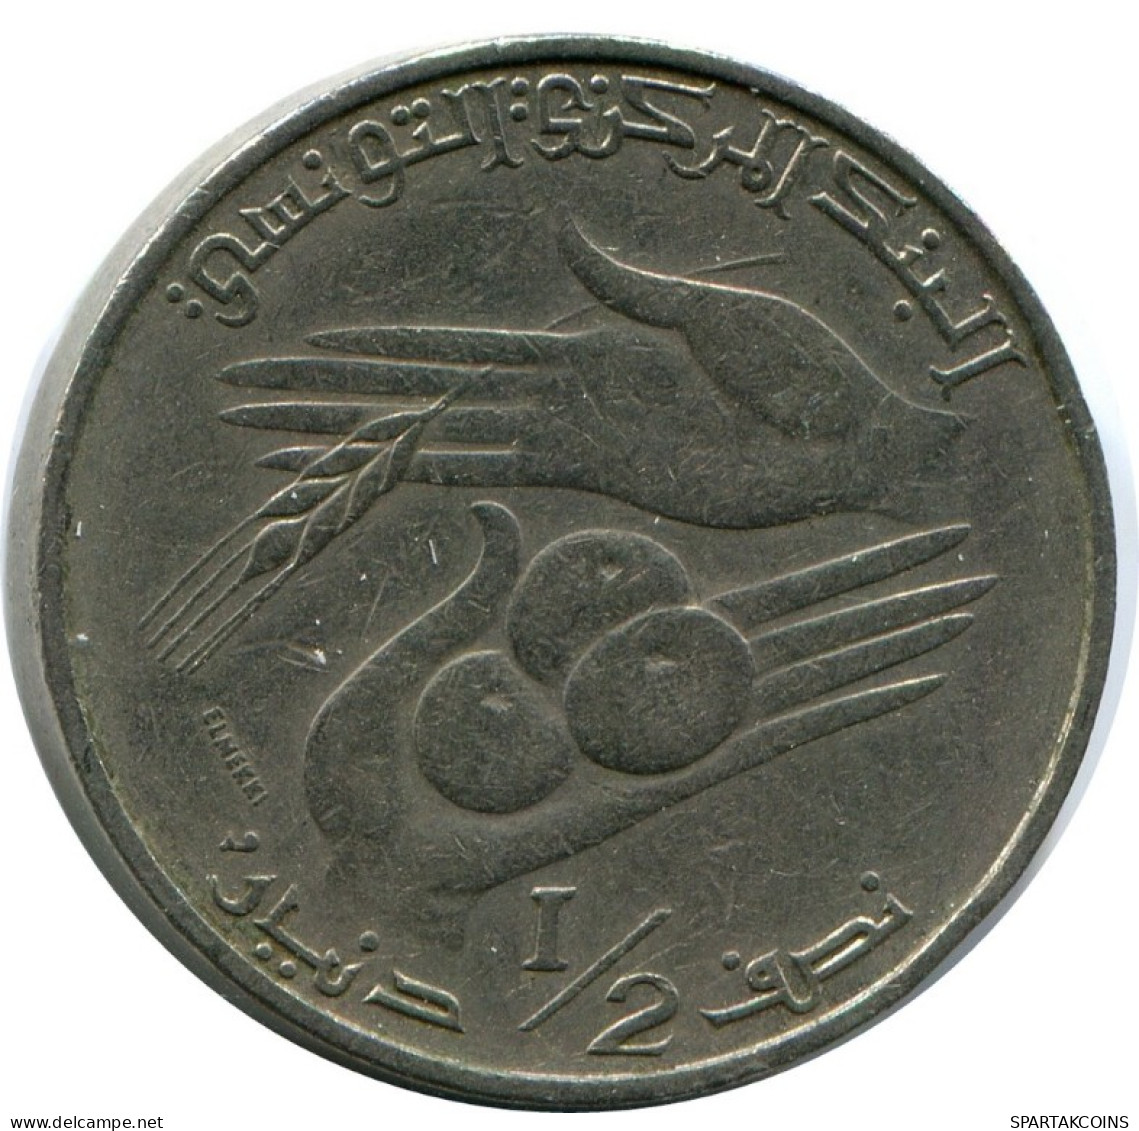 1/2 DINAR 1976 TUNISIA Coin FAO #AK163.U.A - Tunesië